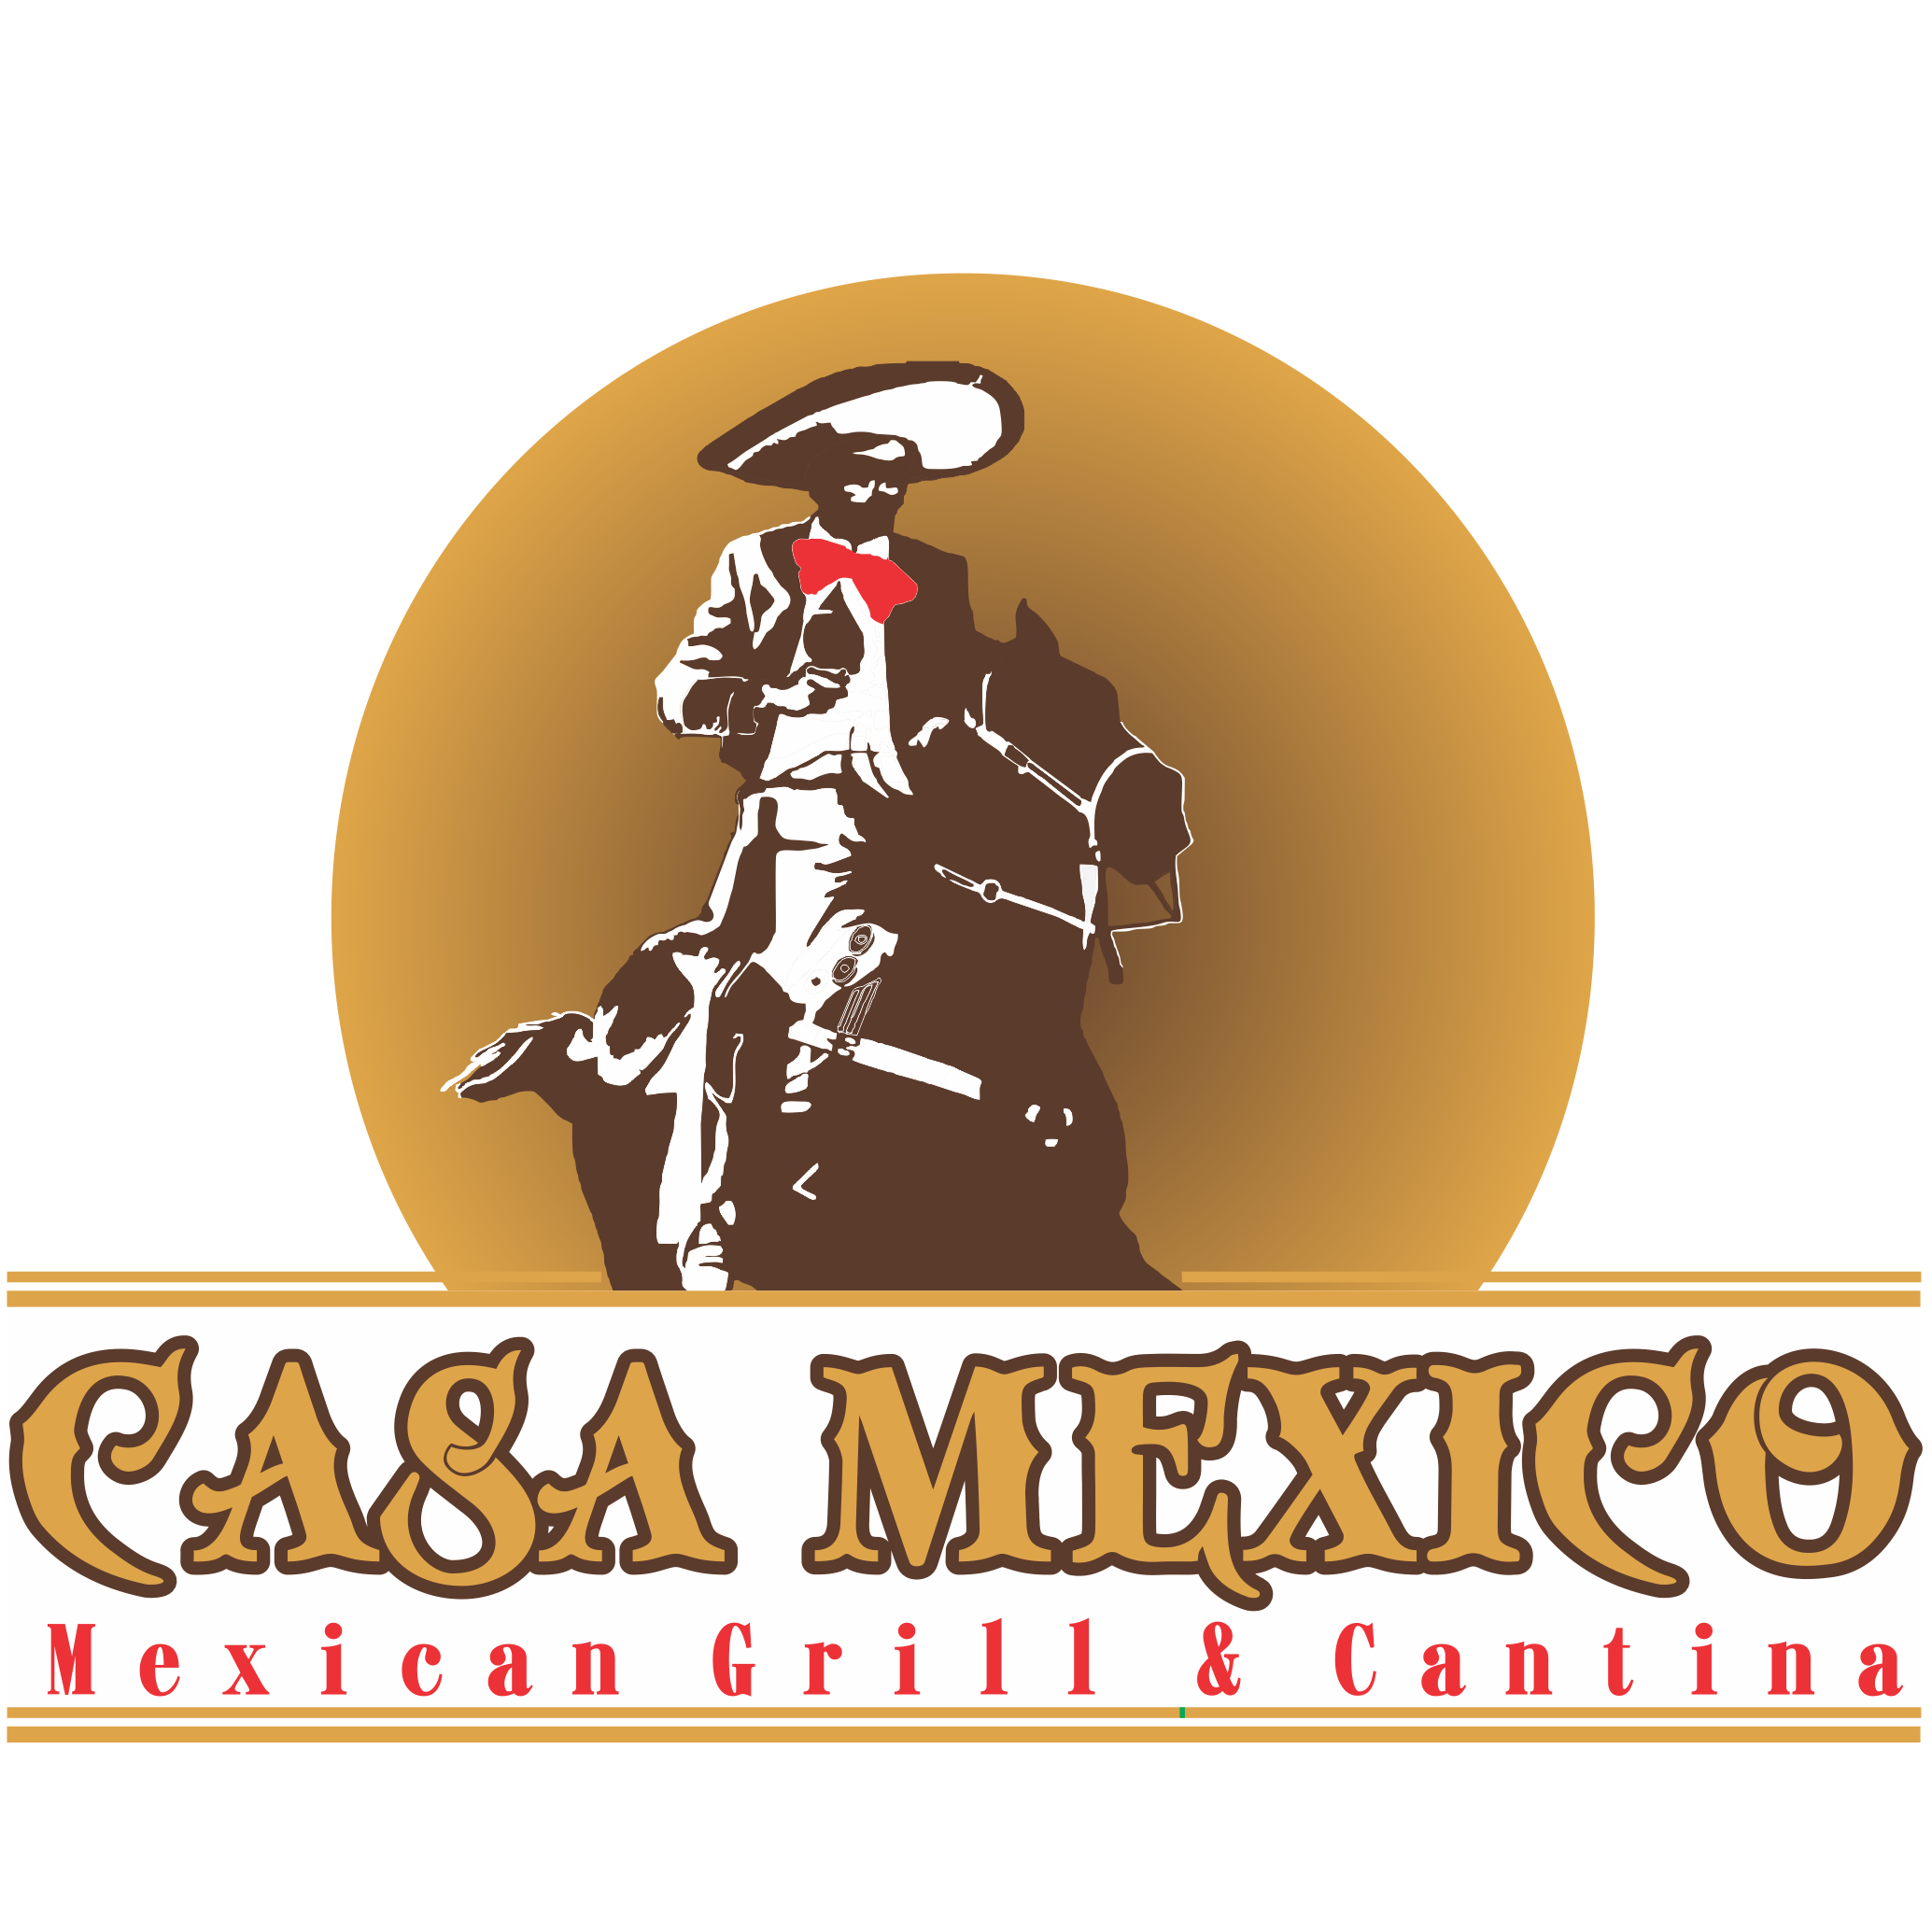 Casa Mexico